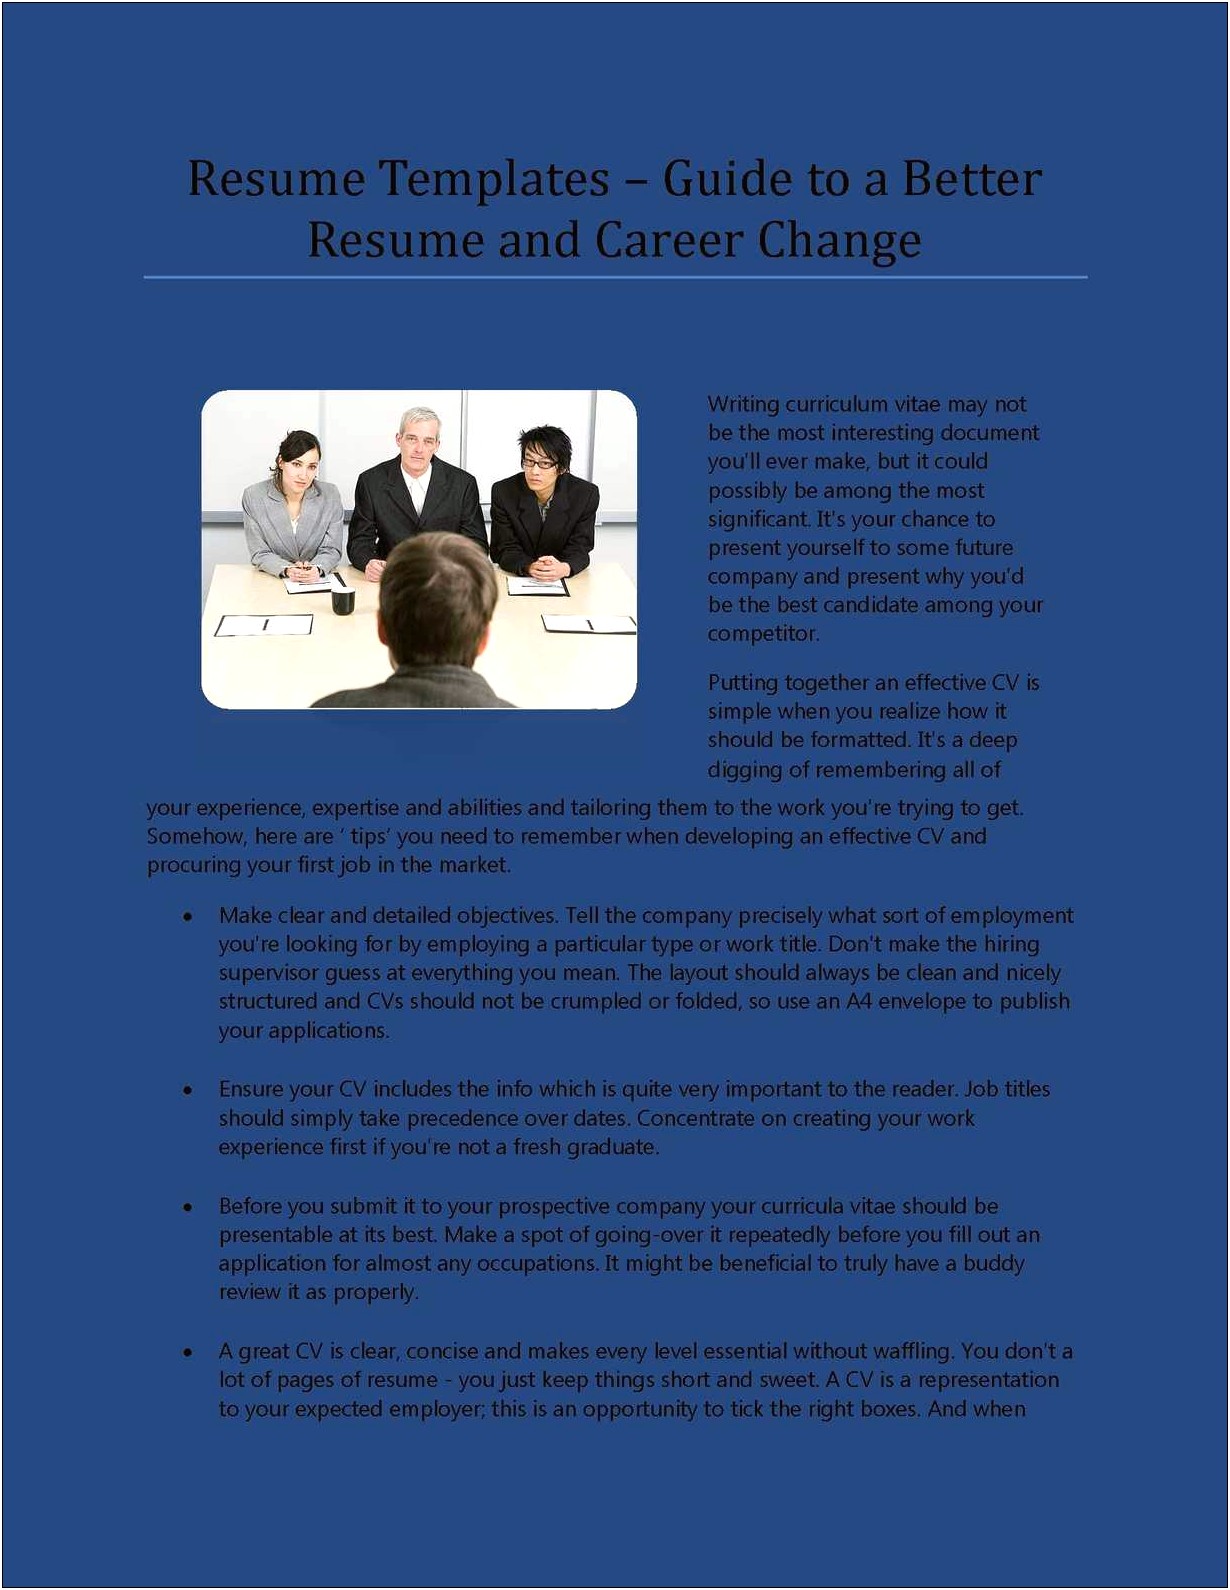 Change In Career Resume Samples